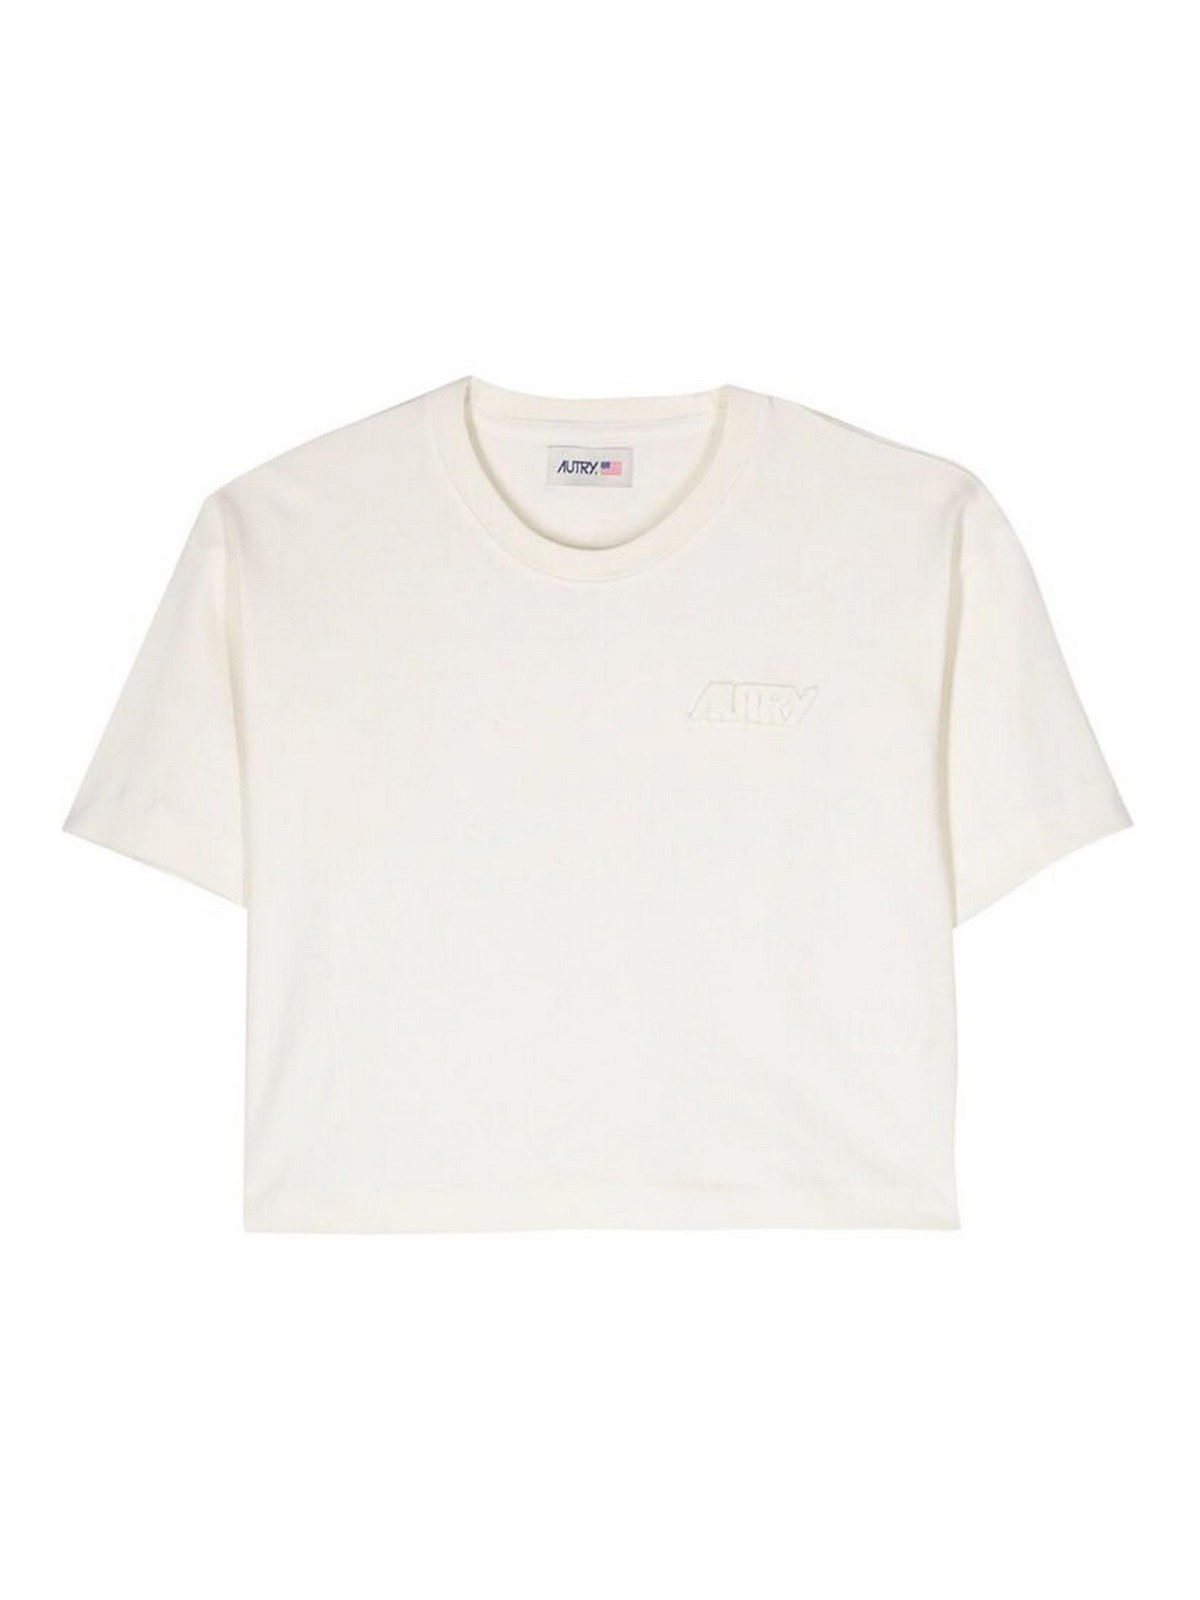 Shop Autry Camiseta - Crema In Cream